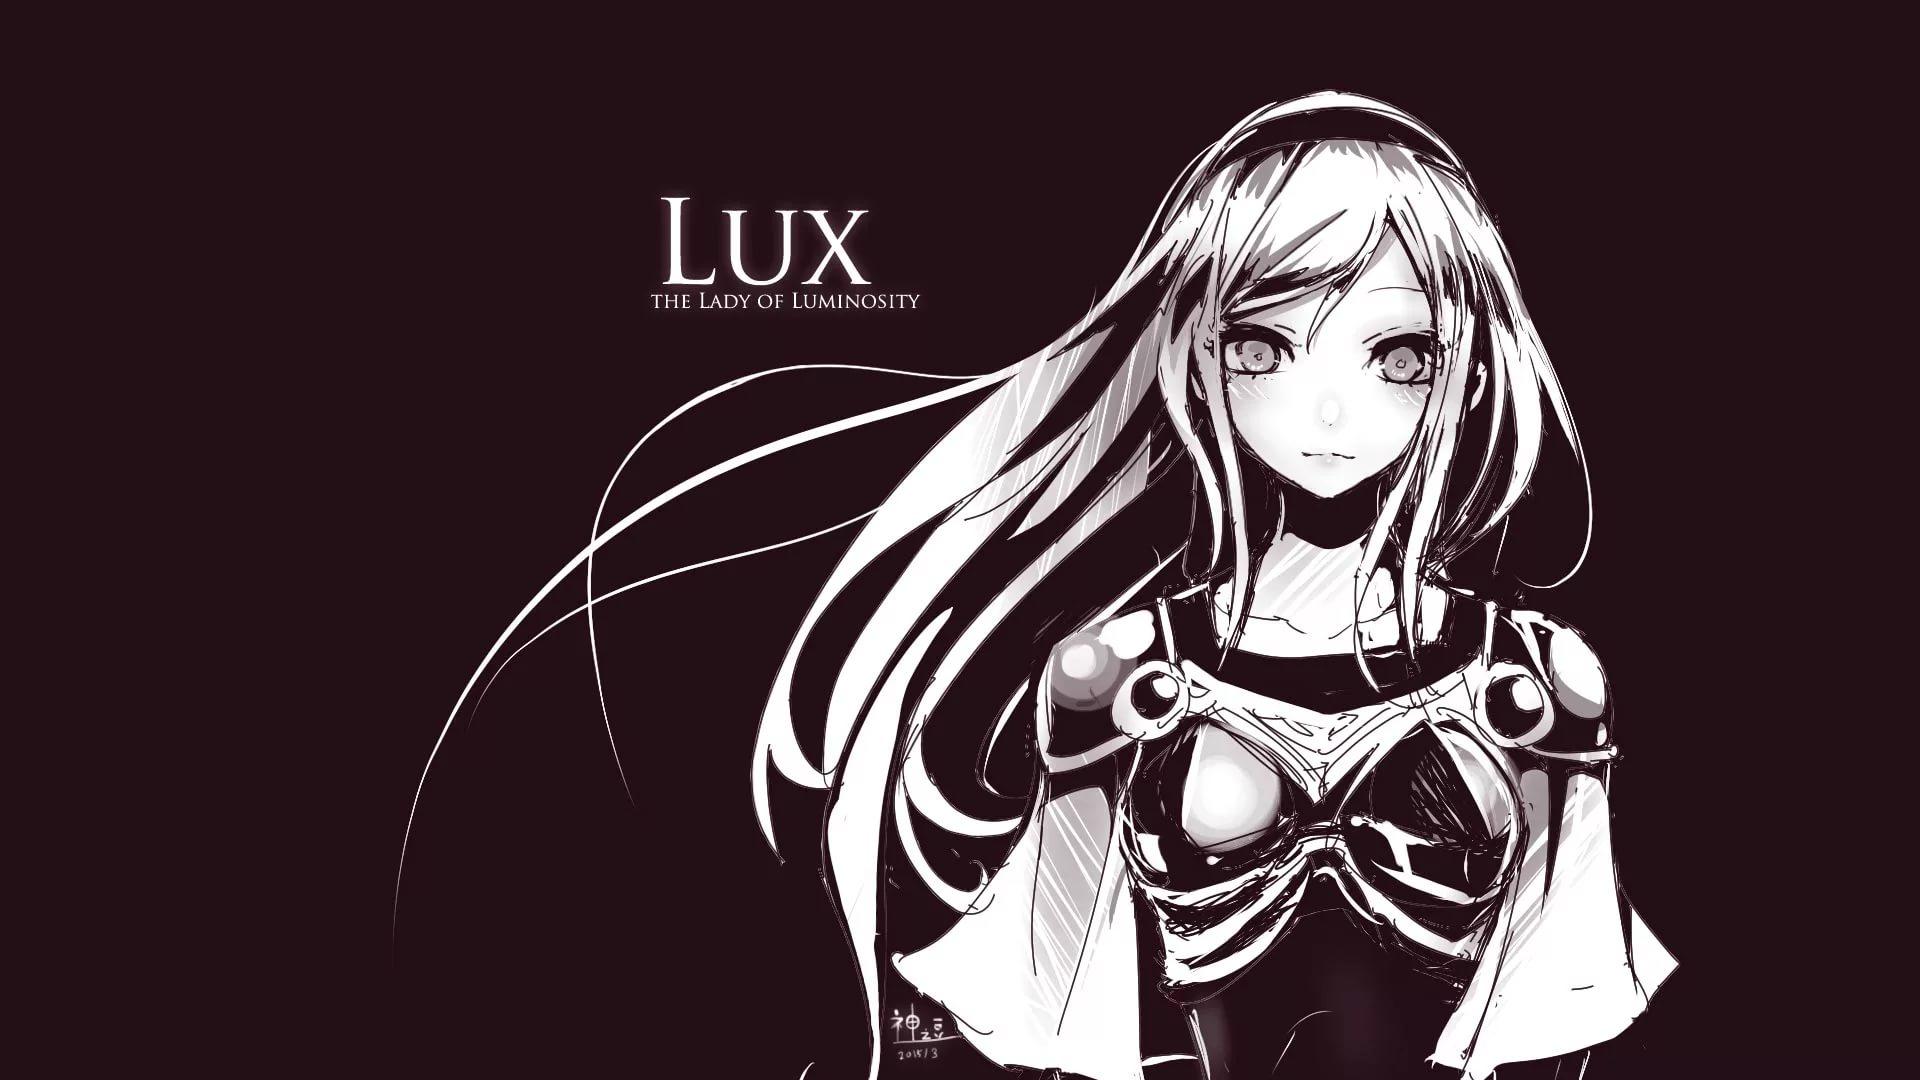 Lux League Of Legends HD Wallpaper free